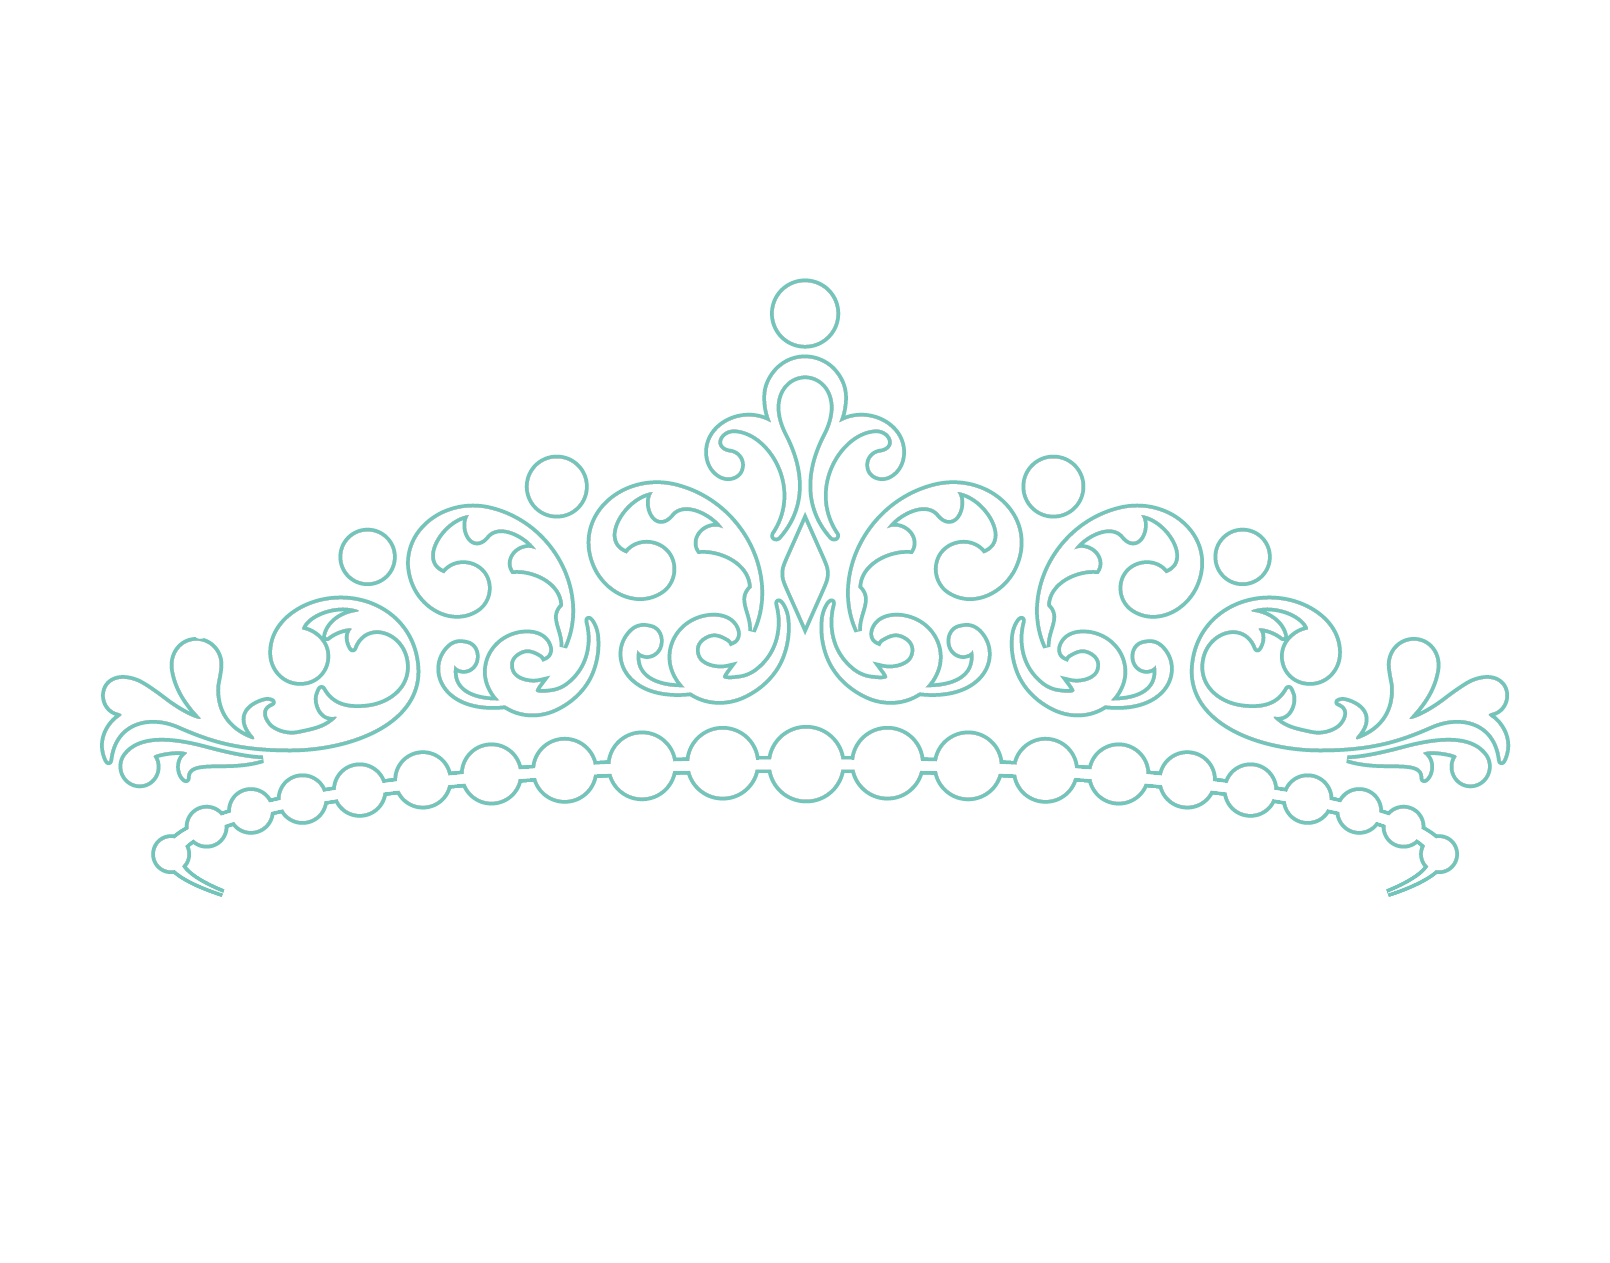 PRI-SHION